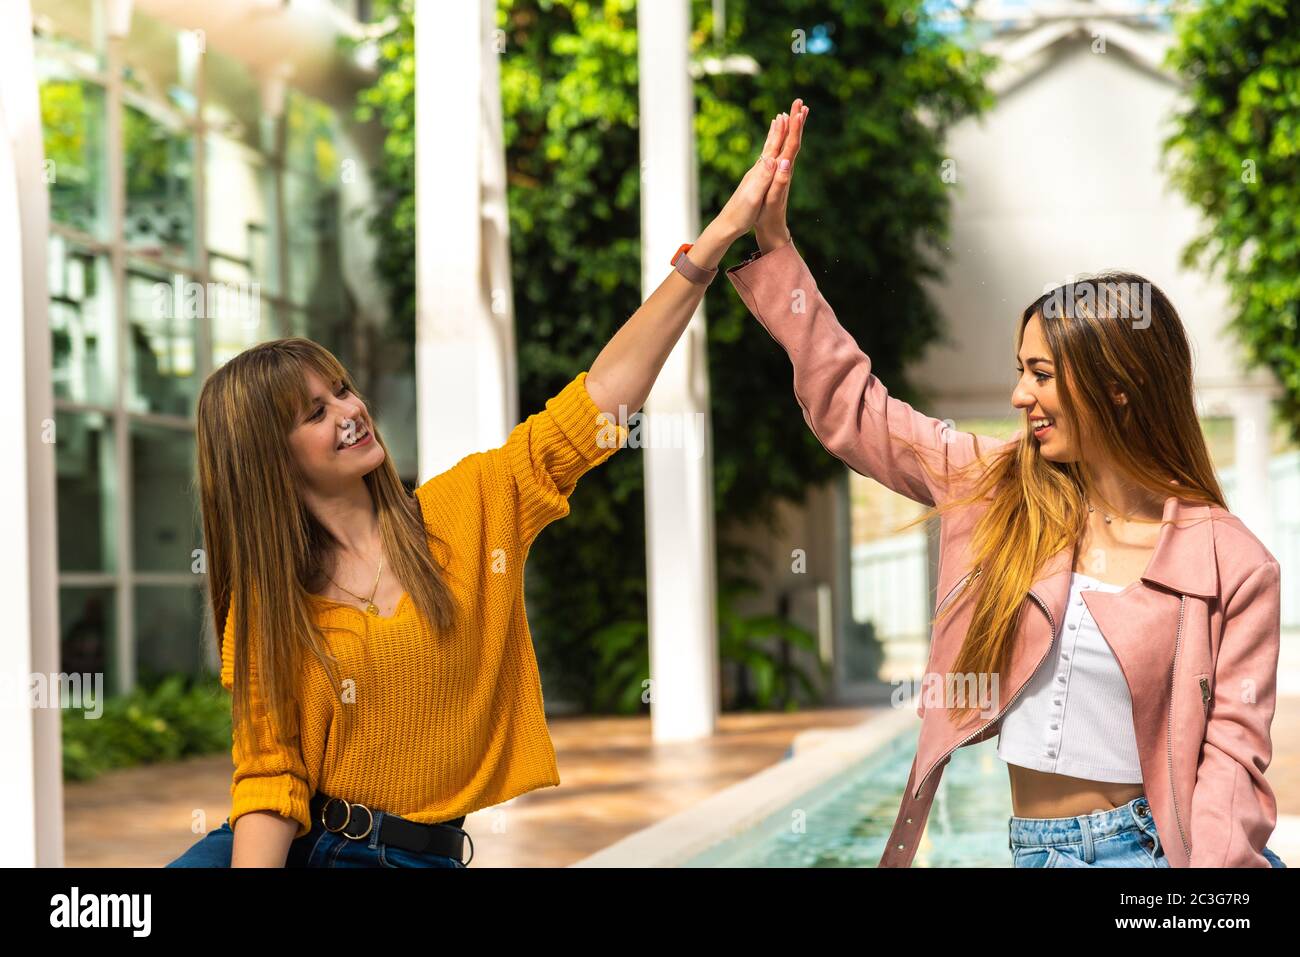 Zwei attraktive junge kaukasische Mädchen mit blonden Haaren schütteln die Hände mit ihren Armen in der Luft lächelnd an einem Brunnen in einem hell erleuchteten Raum mit dem Stockfoto